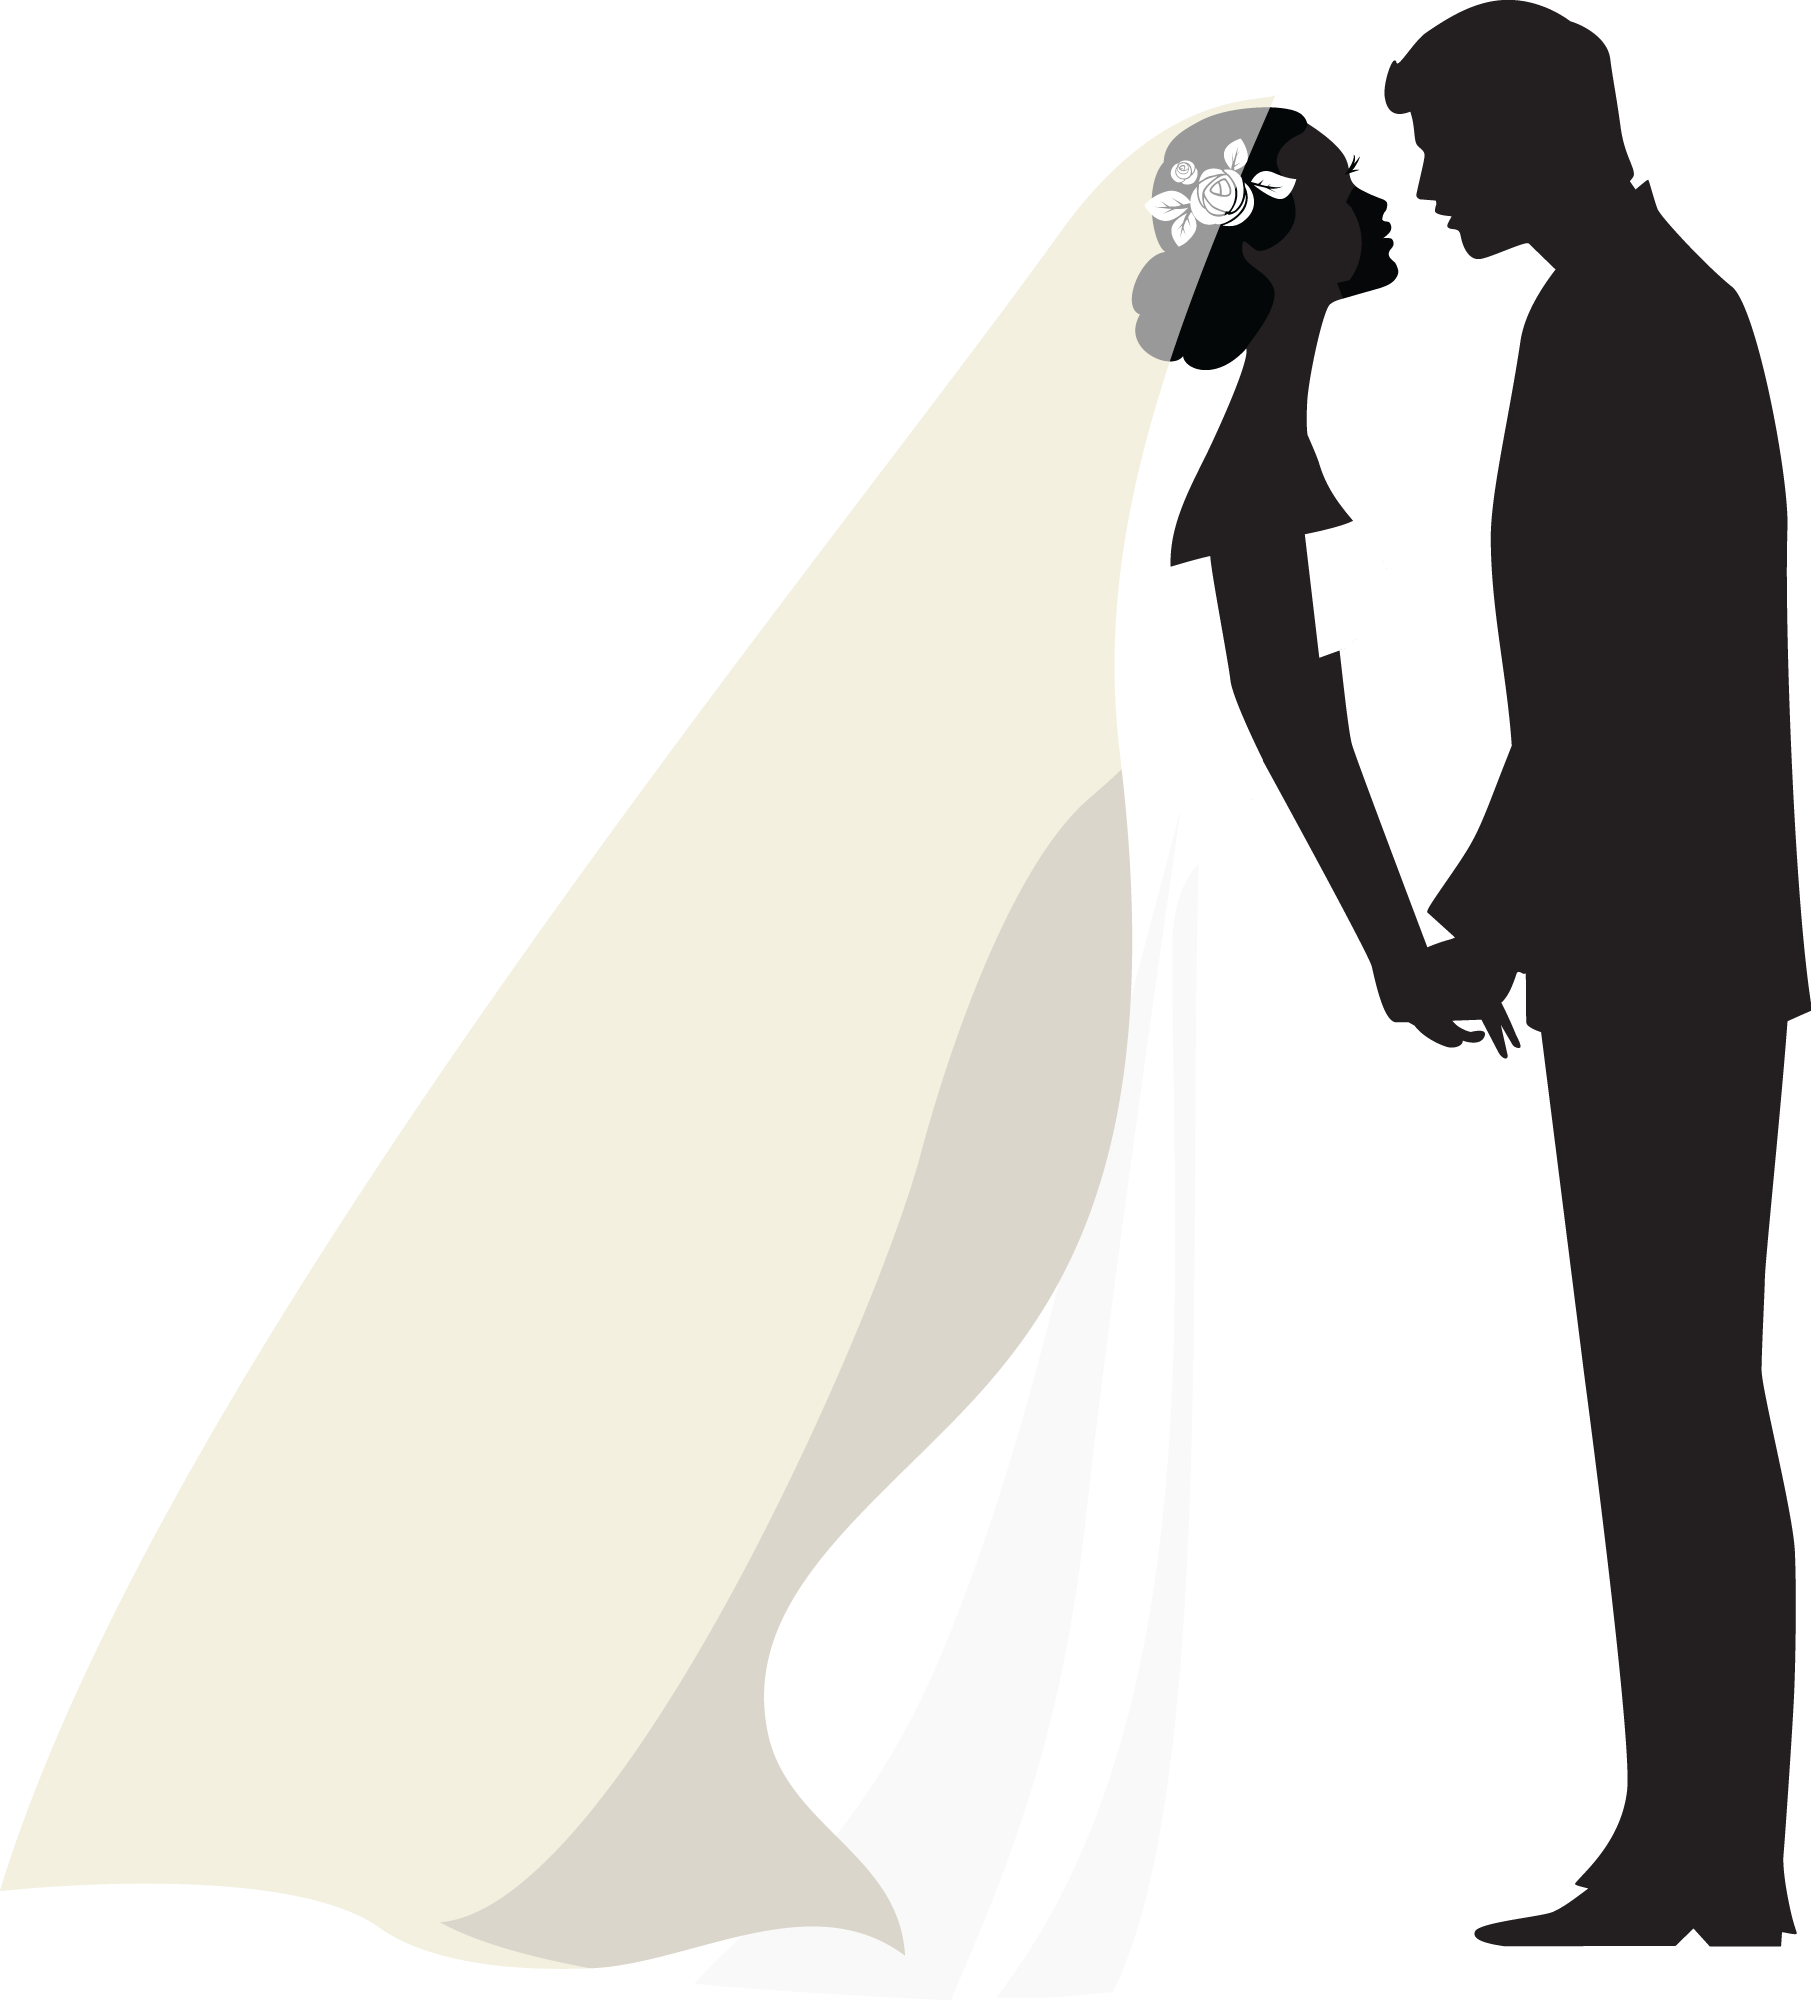 Силуэт жениха и невесты на прозрачном фоне